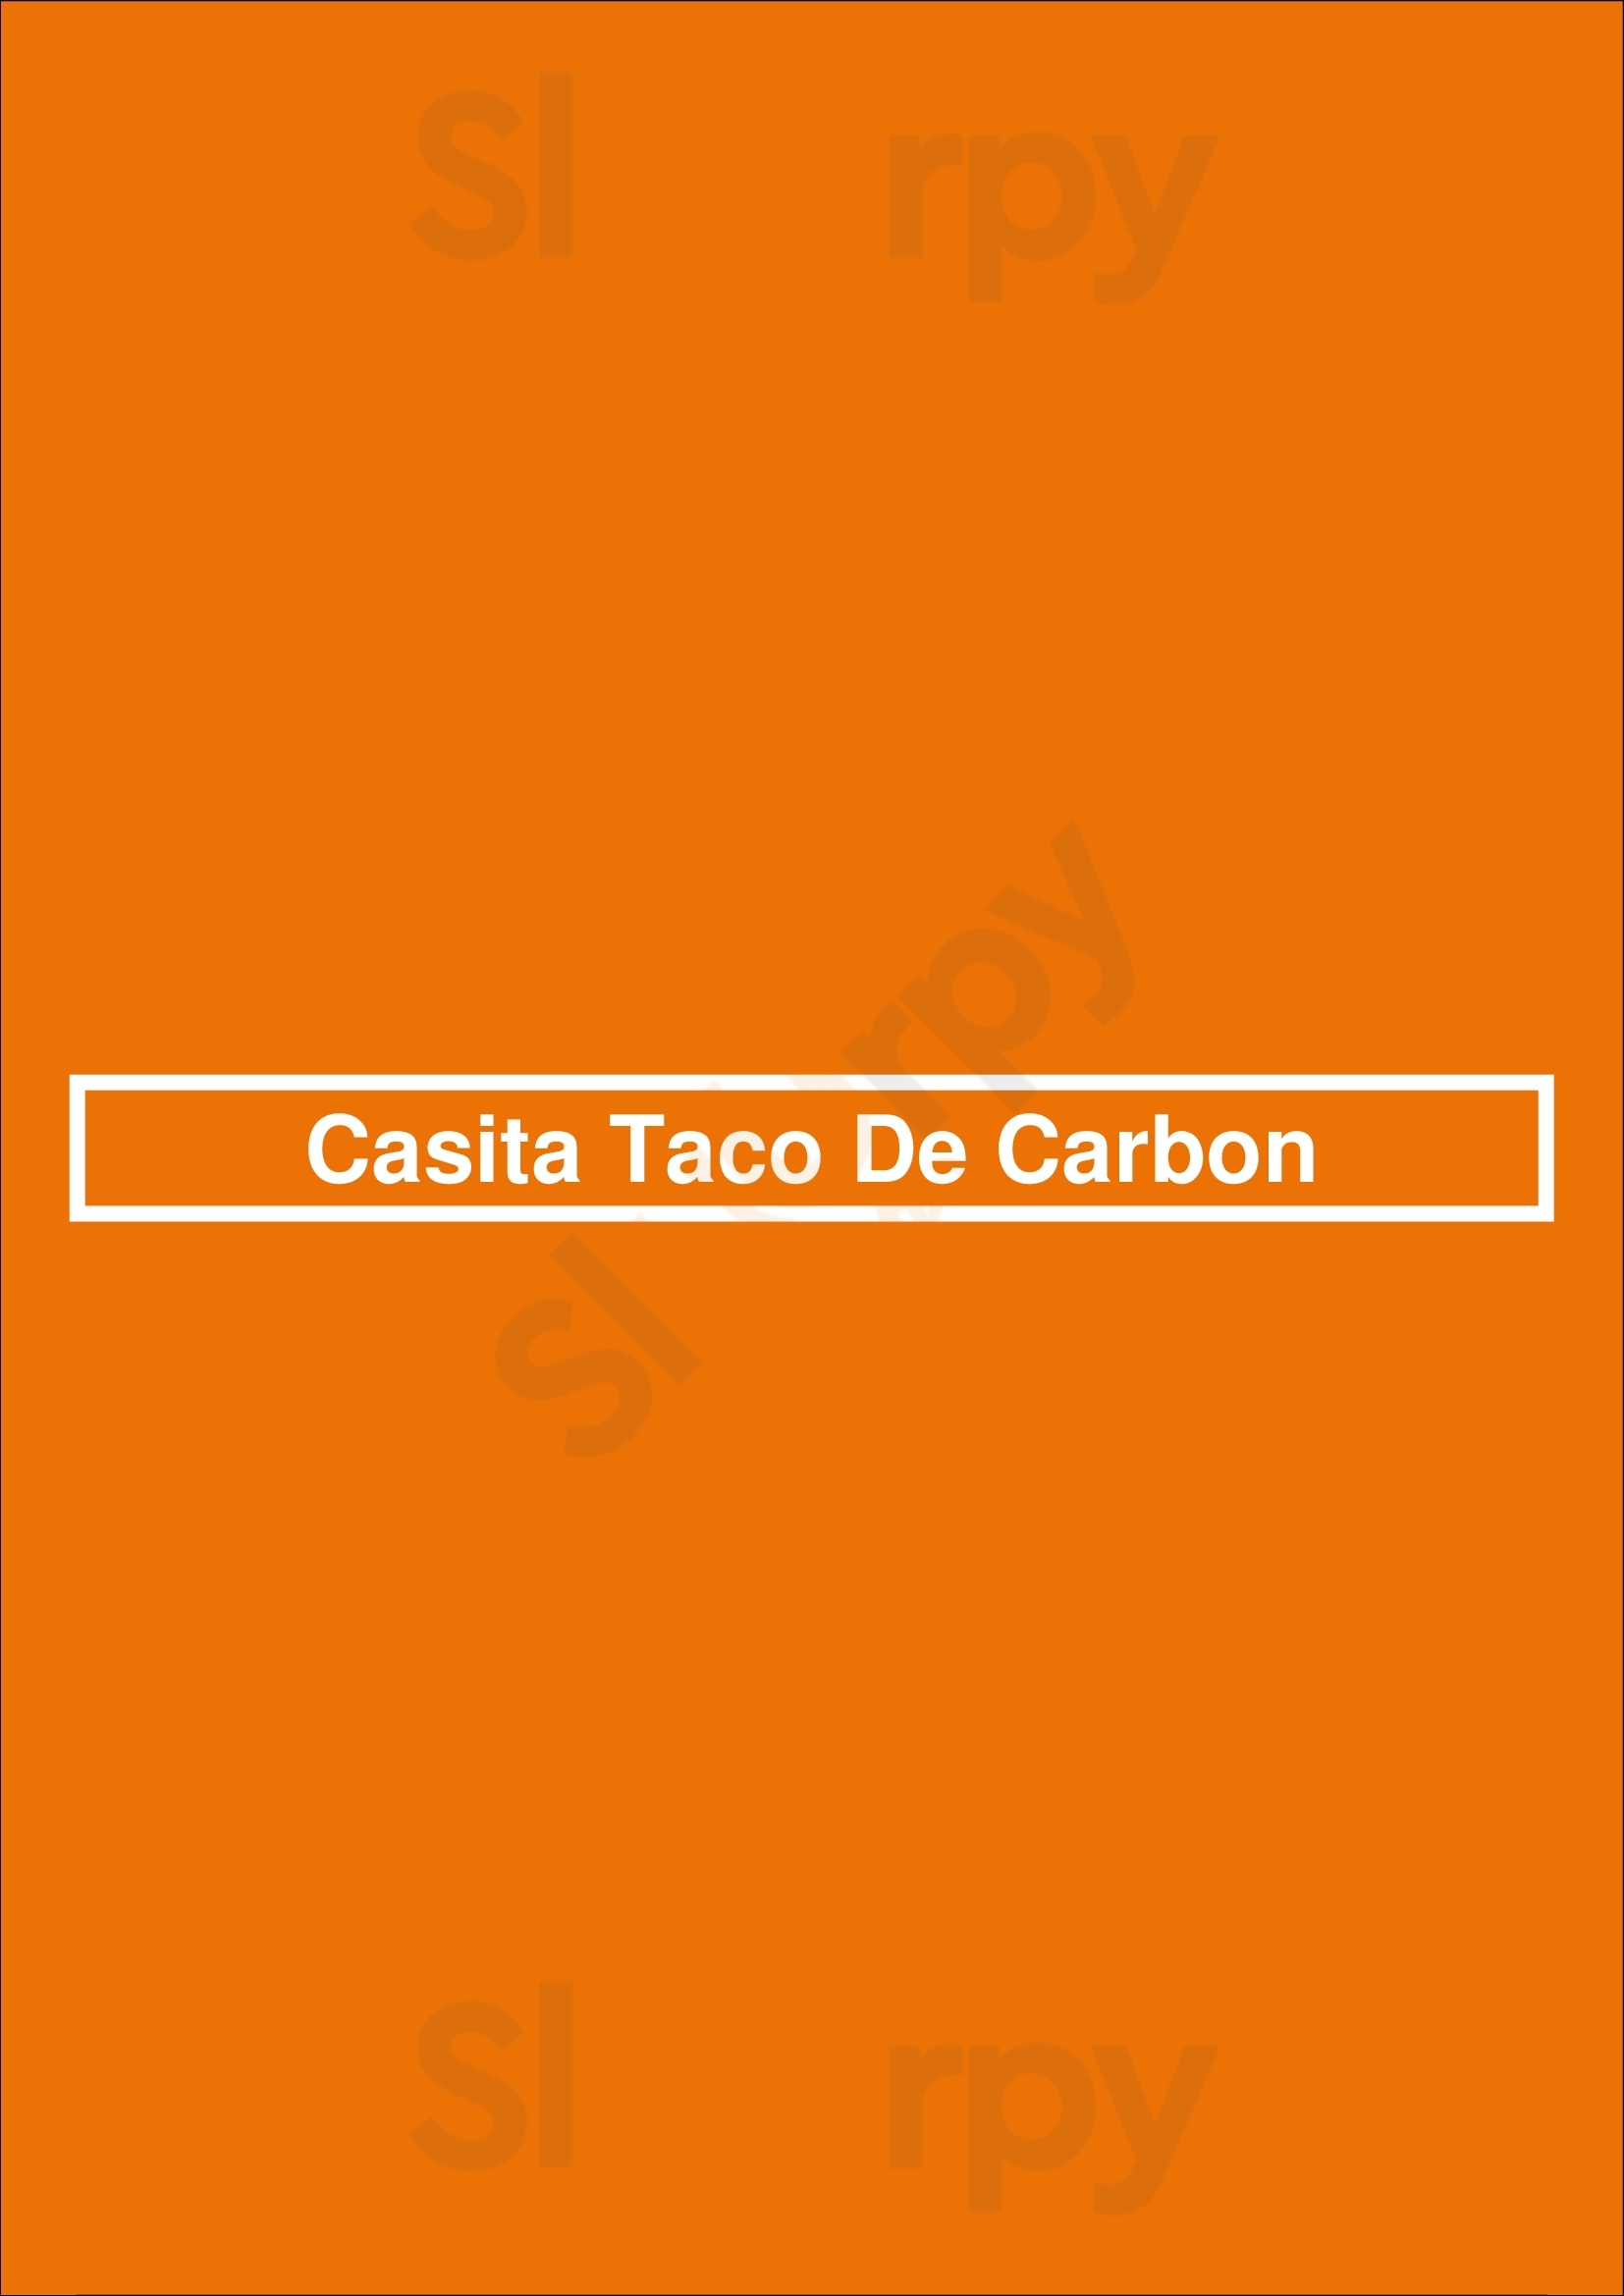 Casita Taco De Carbon Los Angeles Menu - 1